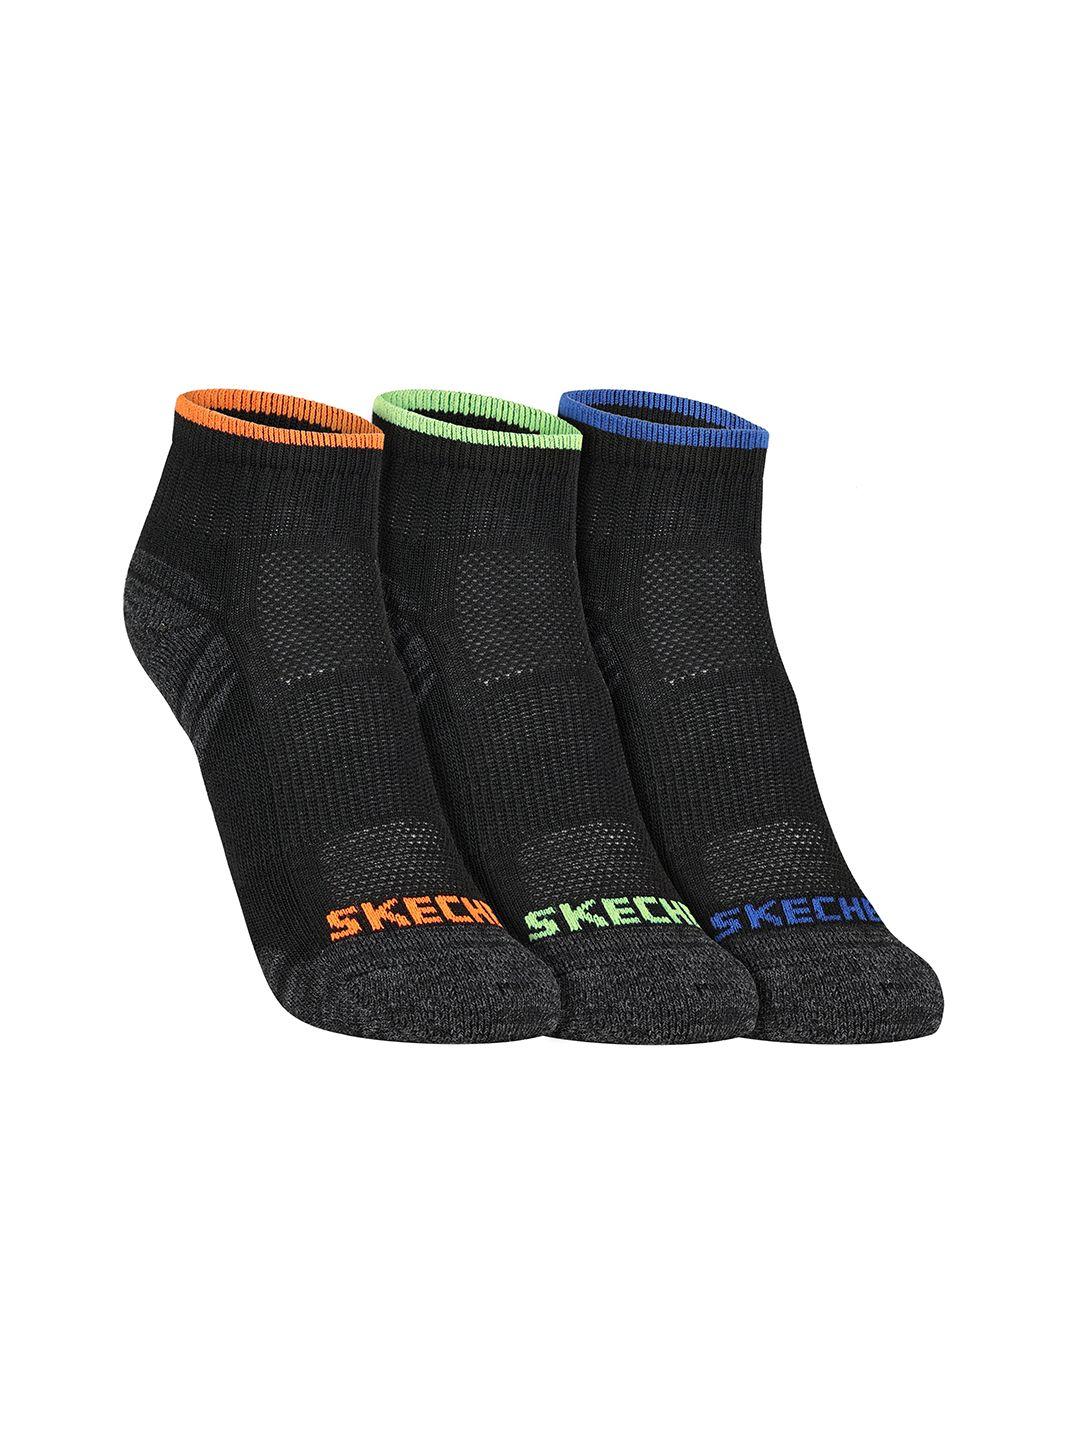 skechers boys pack of 3 patterned ankle-length socks